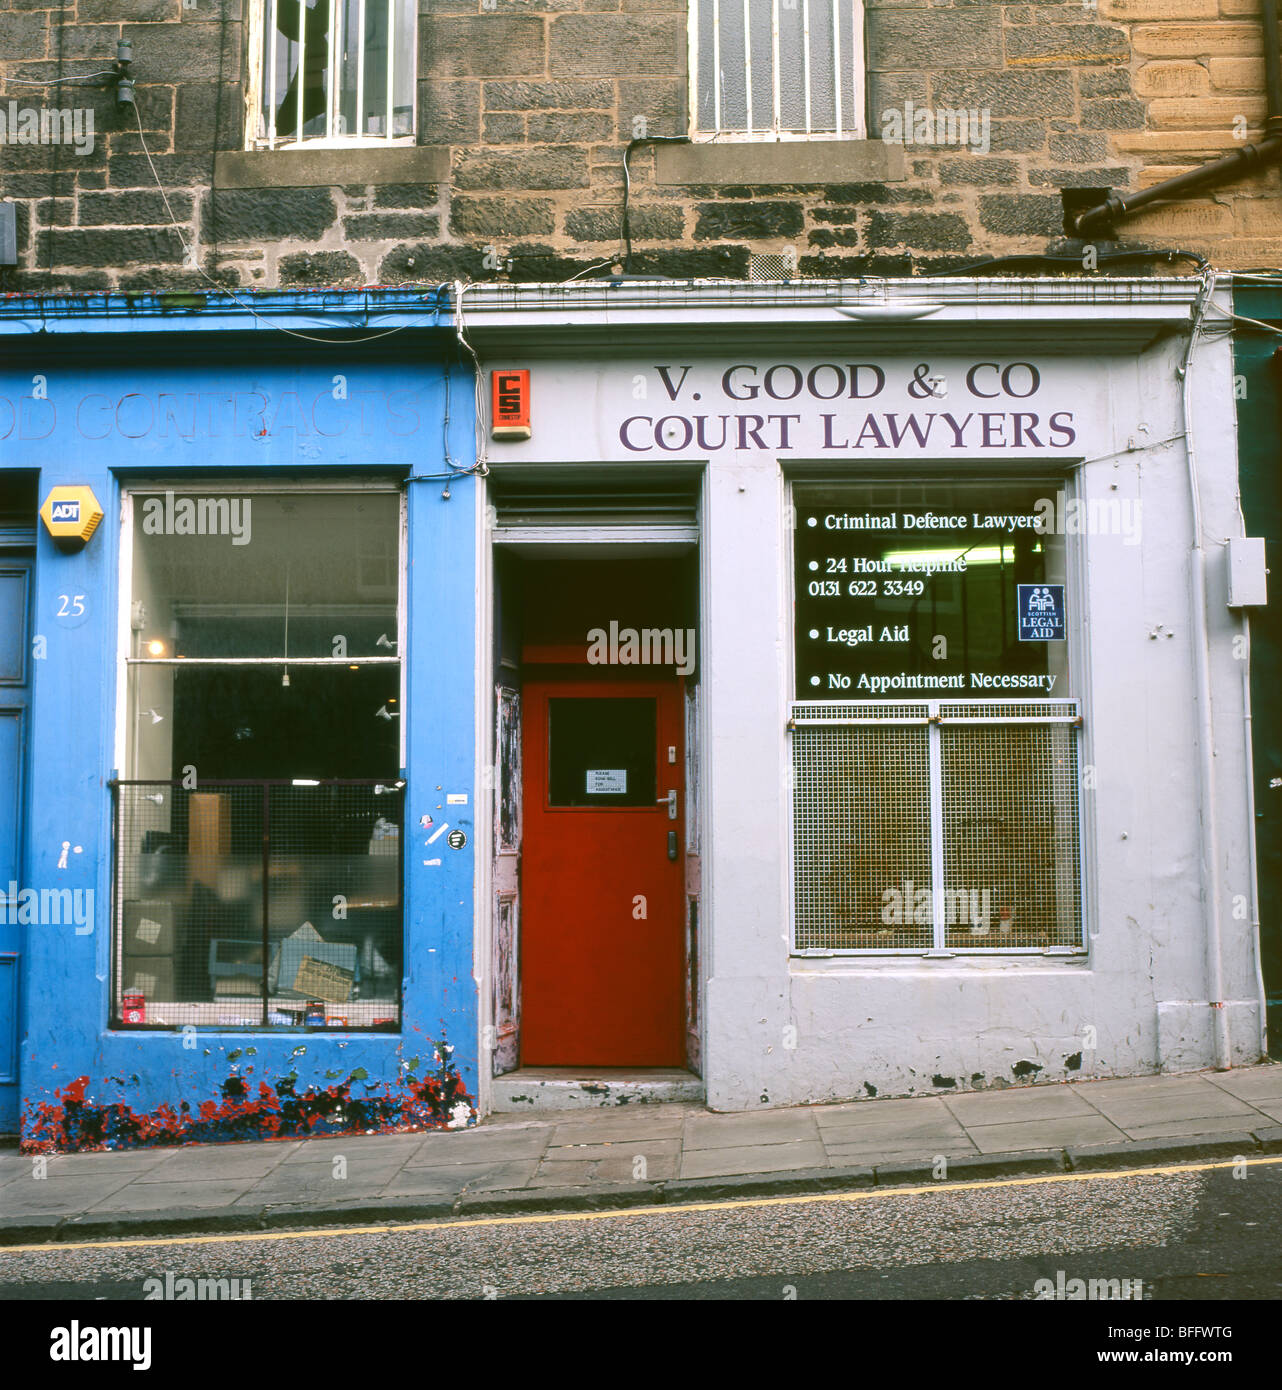 V. Good & Co Court Criminal Defense Lawyers Shop in Candlemaker Row, Edinburgh Schottland Großbritannien Großbritannien KATHY DEWITT Stockfoto